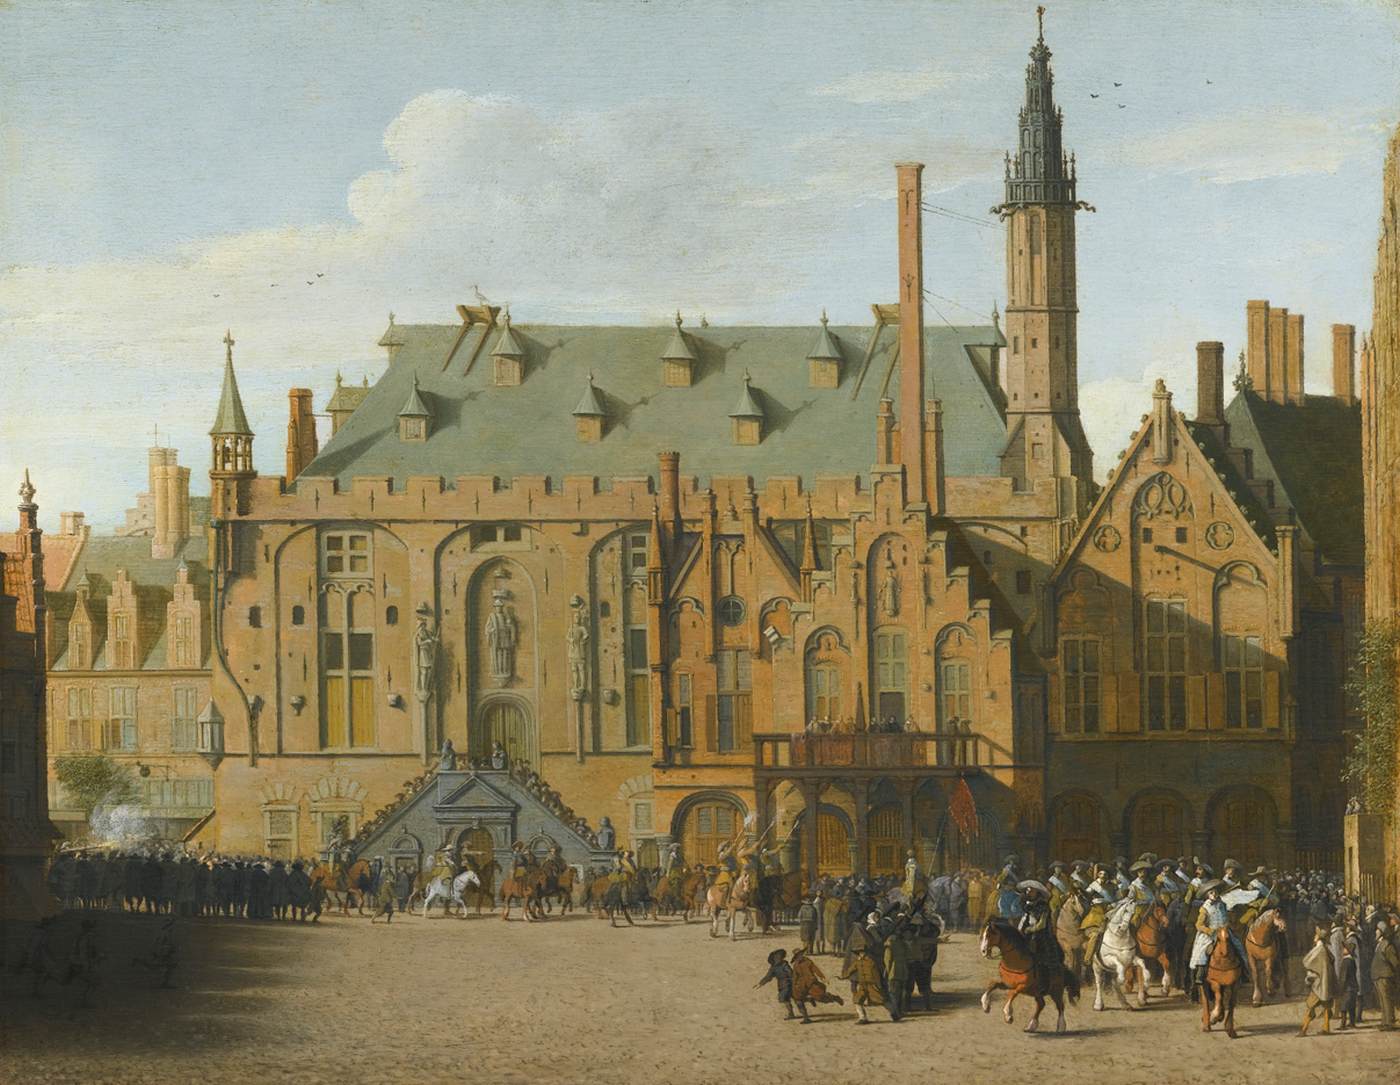 Die Stadt Haarlem mit dem Eingang von Prinz Maurits, um die Gouverneure 1618 zu ersetzen